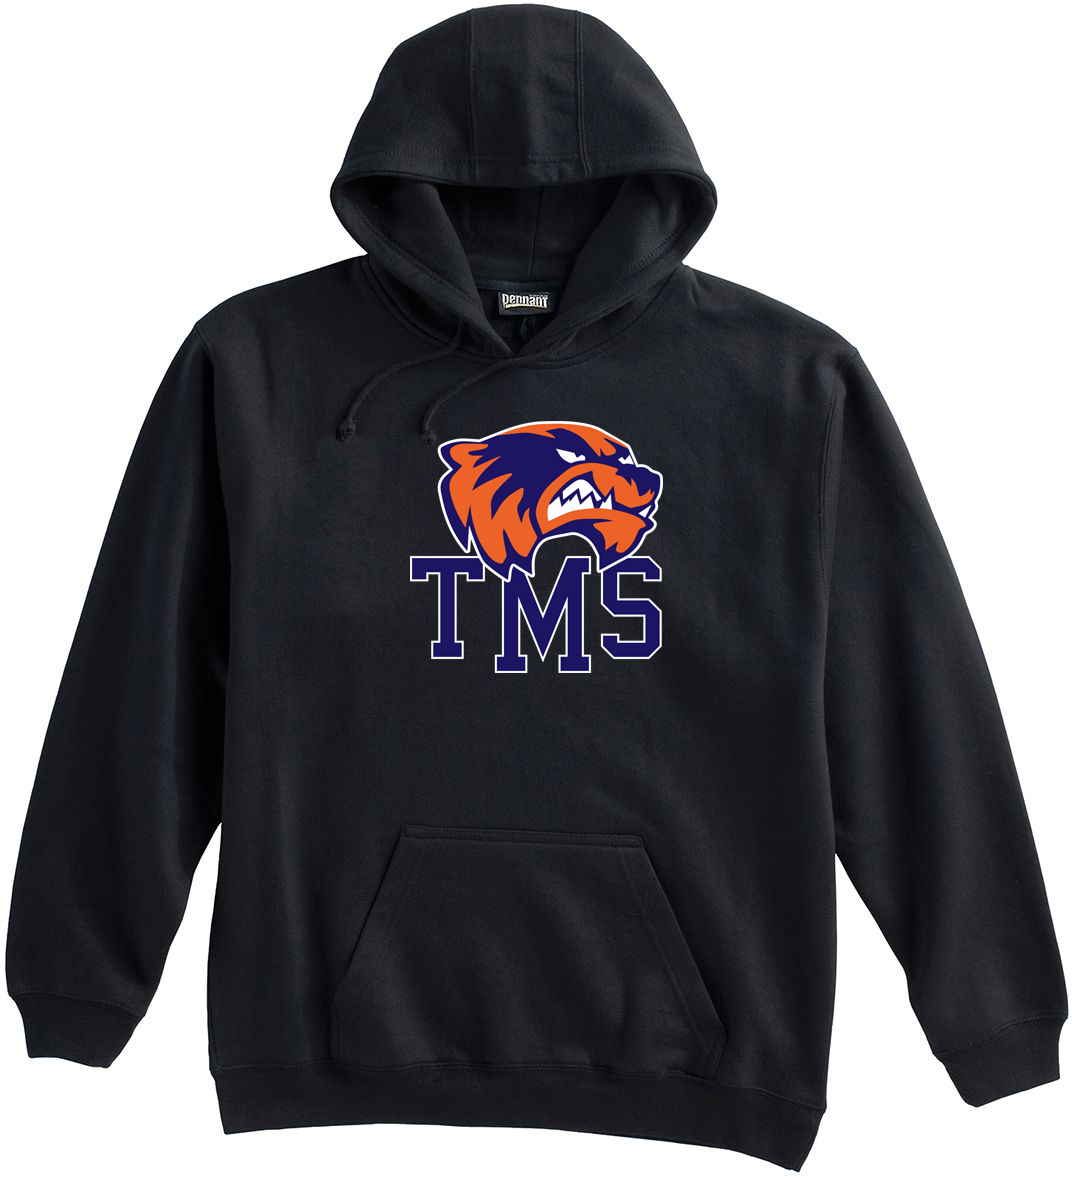 TMS Track & Field Sweatshirt